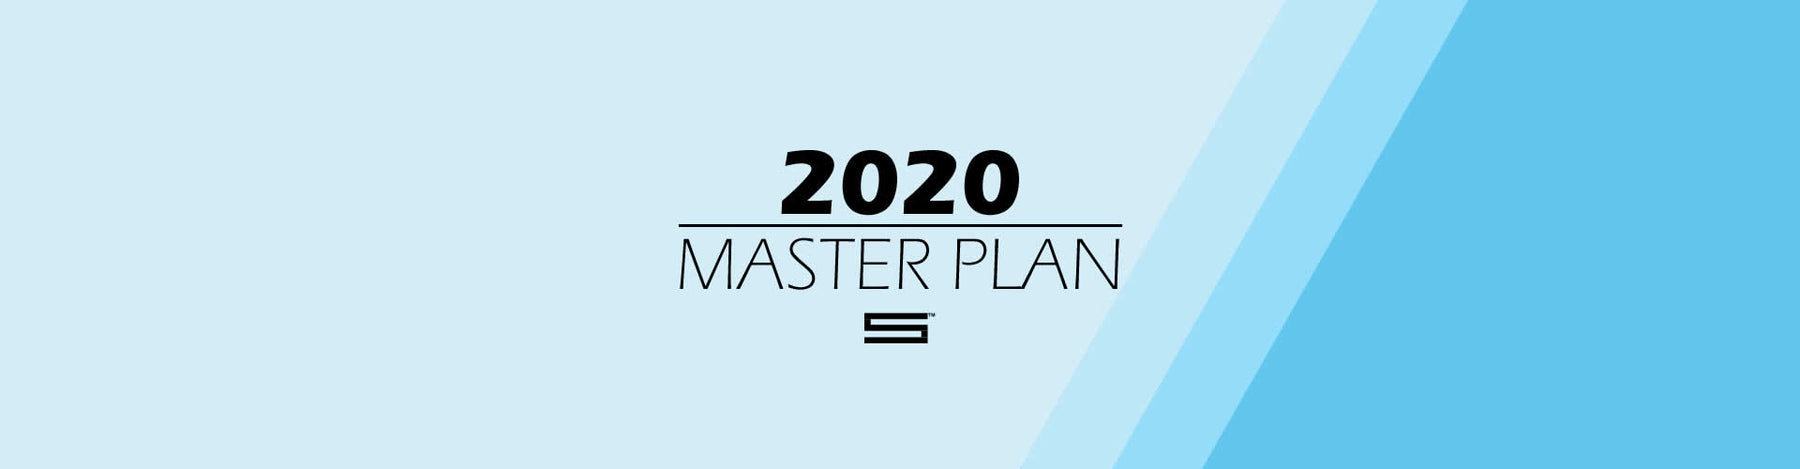 2020 Master Plan